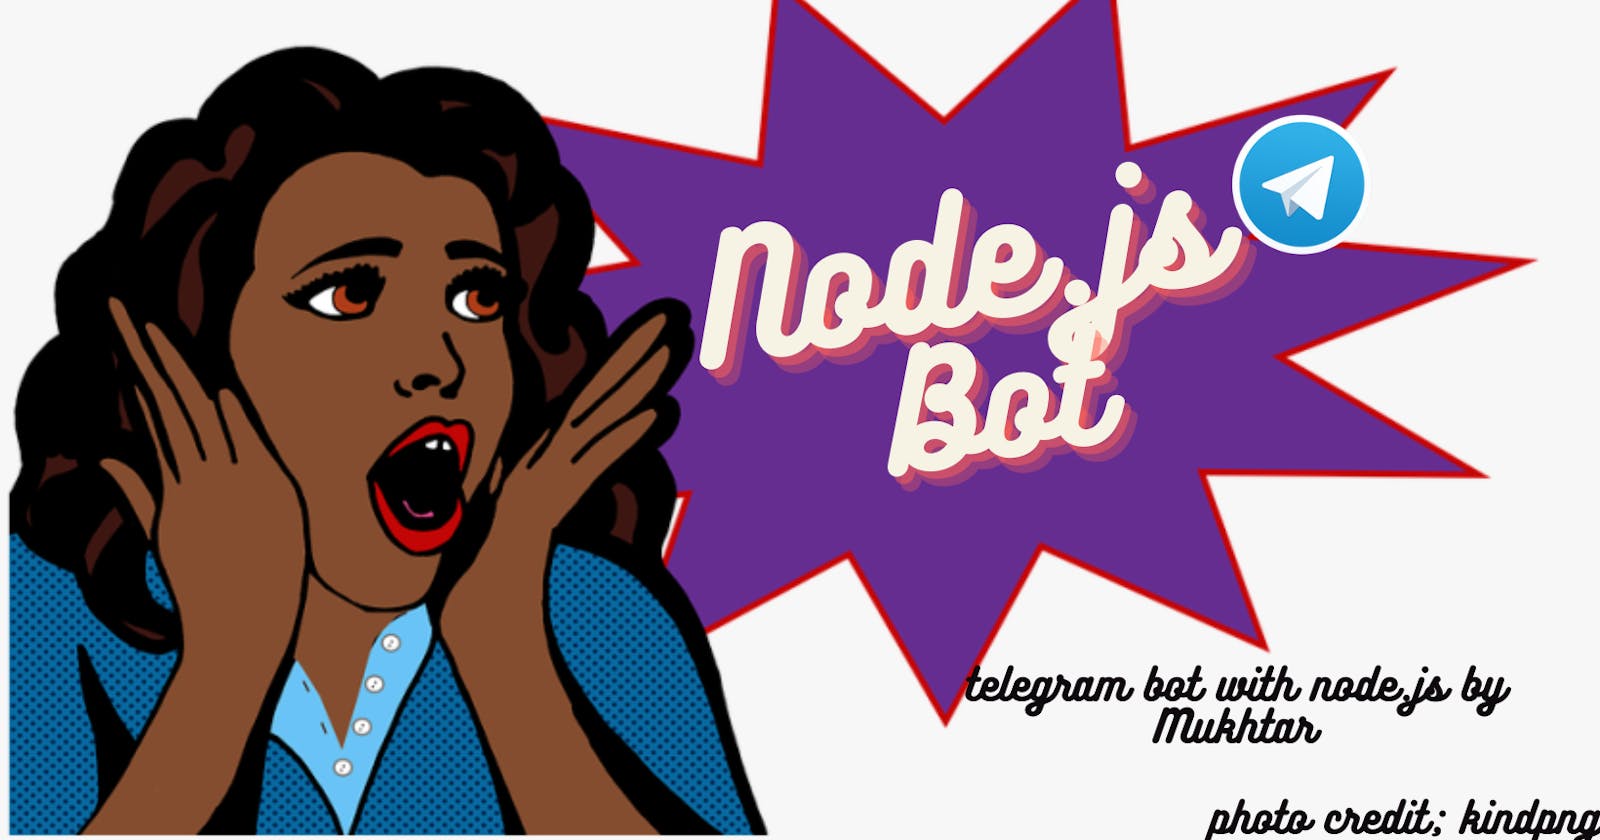 I created a telegram bot using Node.js